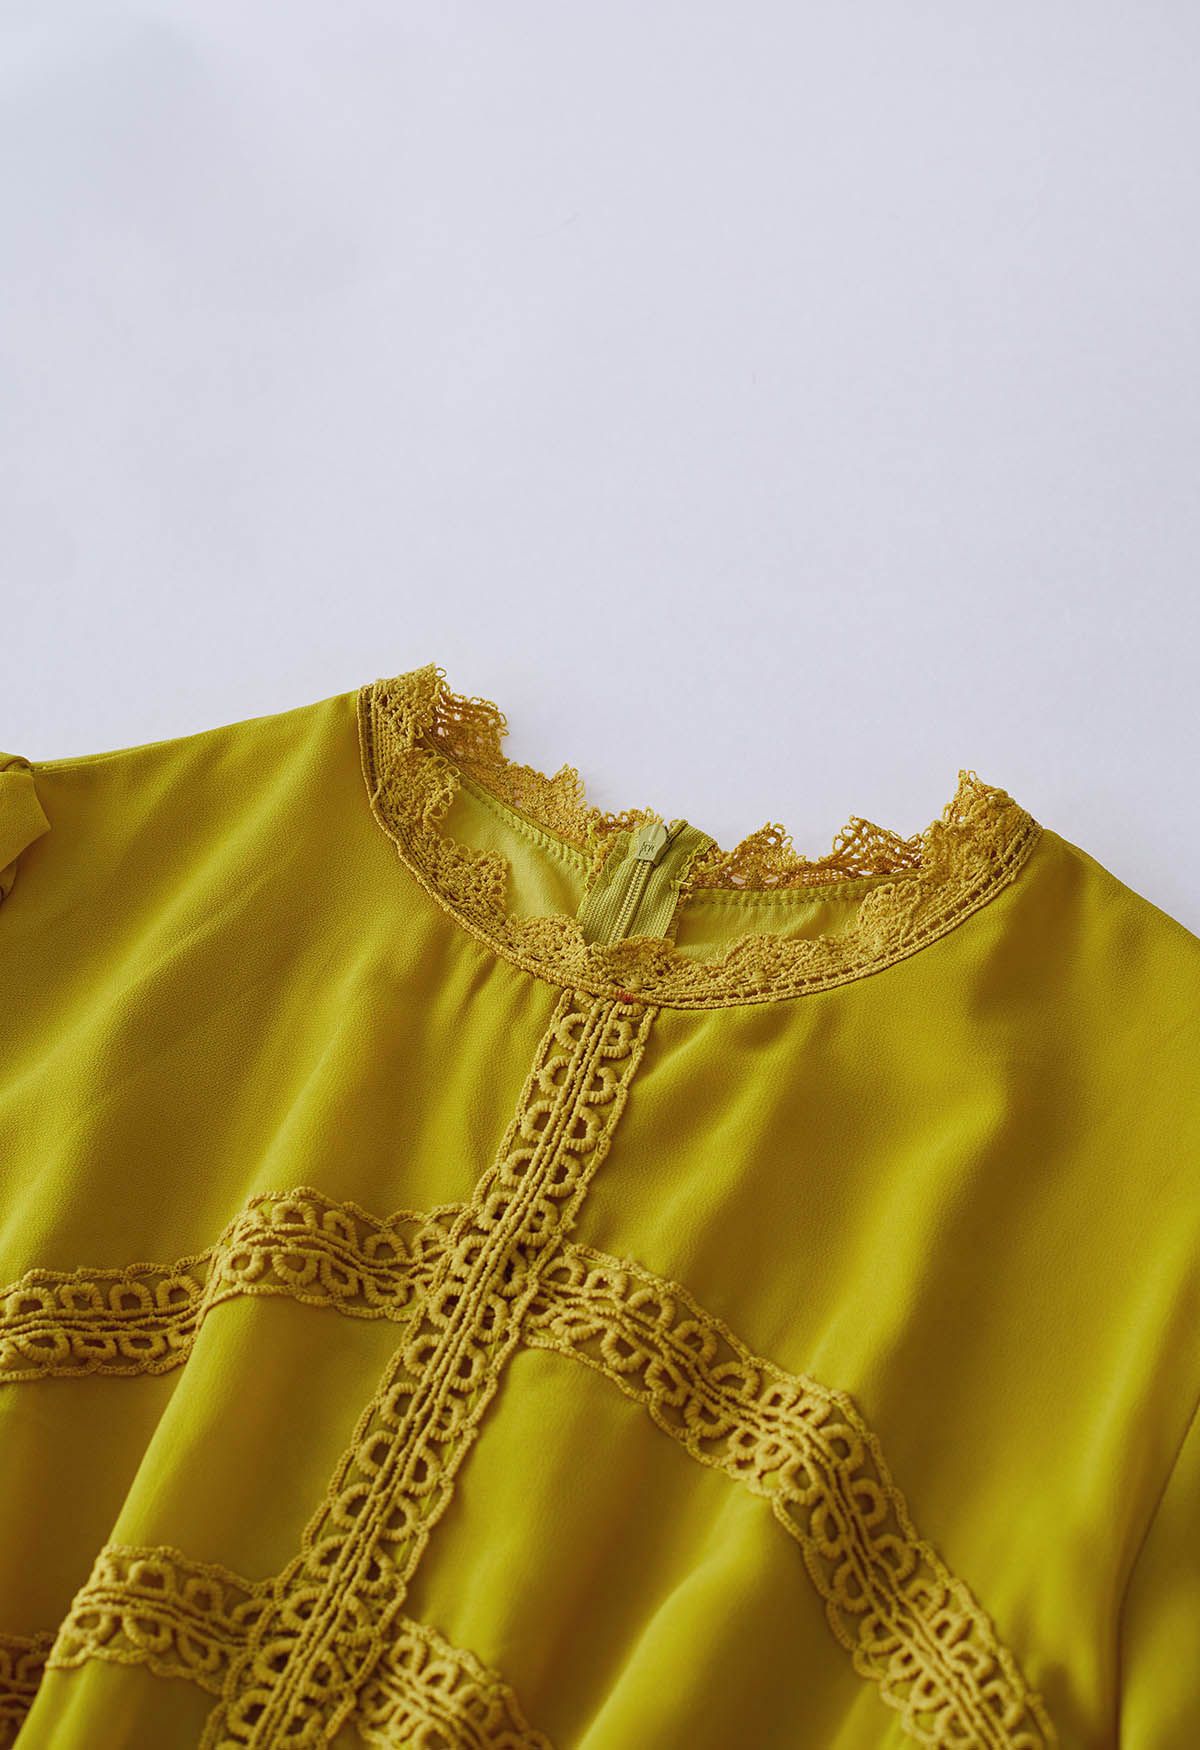 فستان ماكسي شيفون بطيات من الدانتيل الكروشيه باللون الأصفر